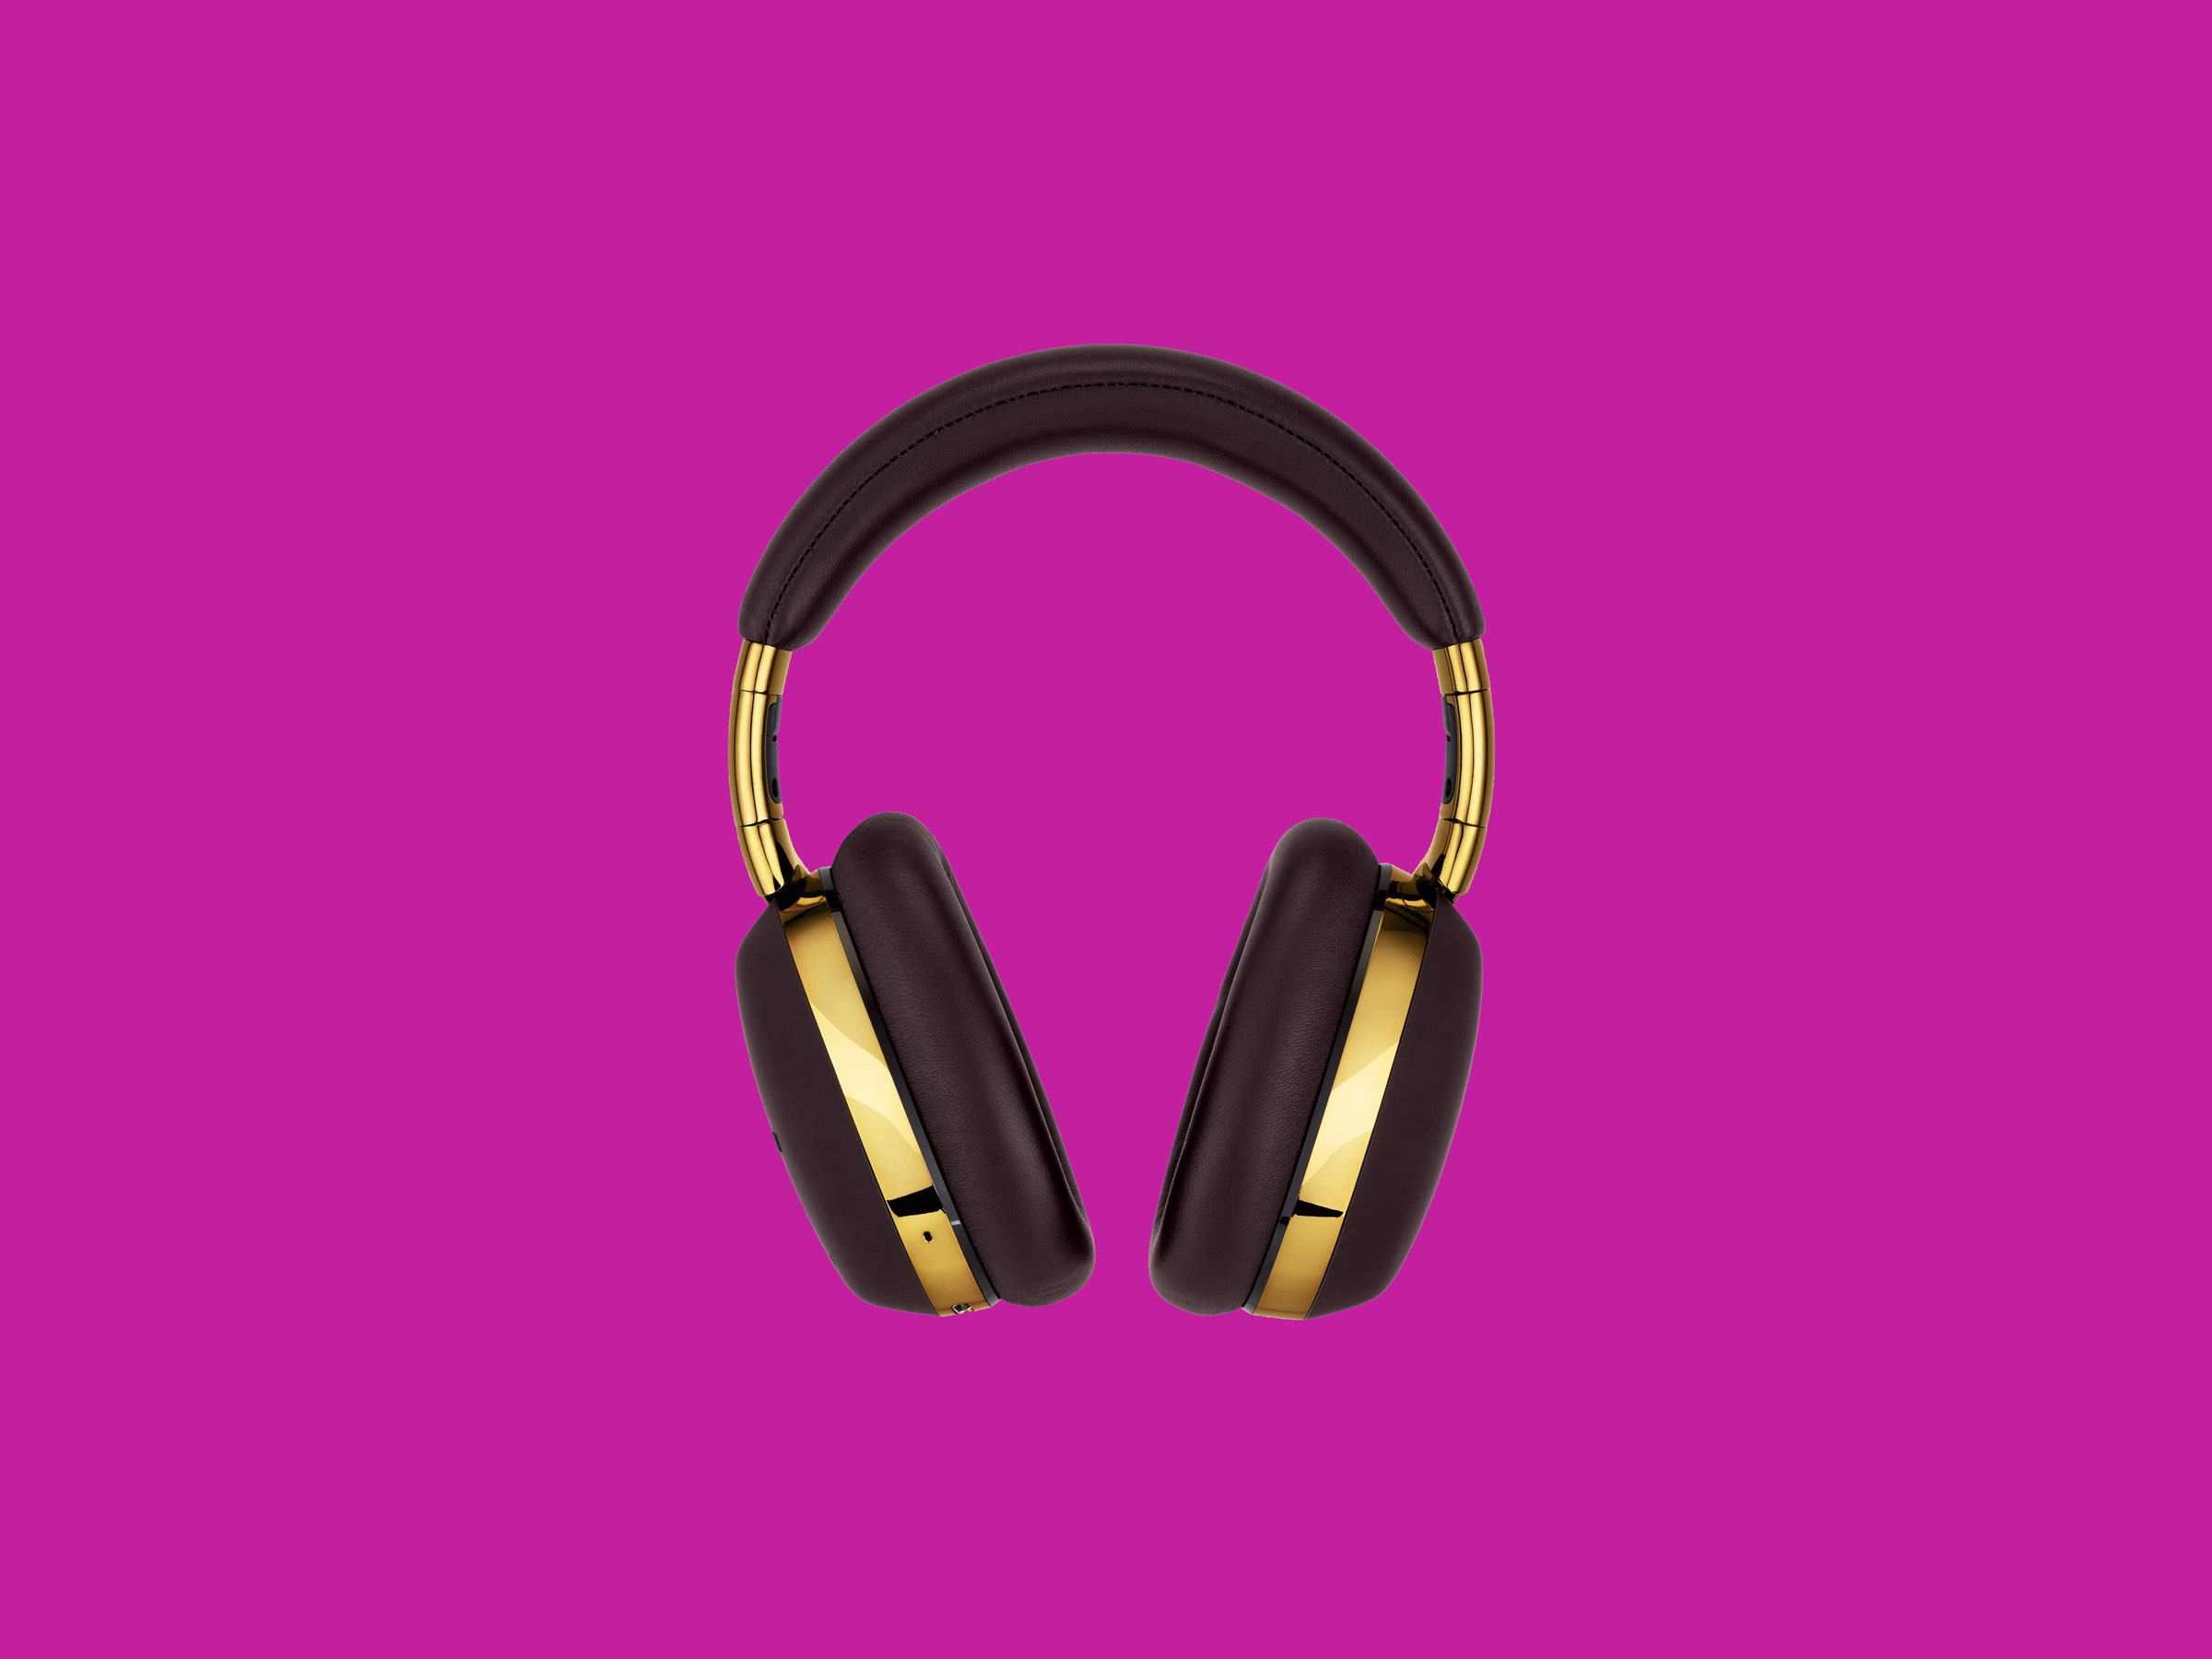 Montblanc MB 01 Review: Premier Noise Canceling Headphones